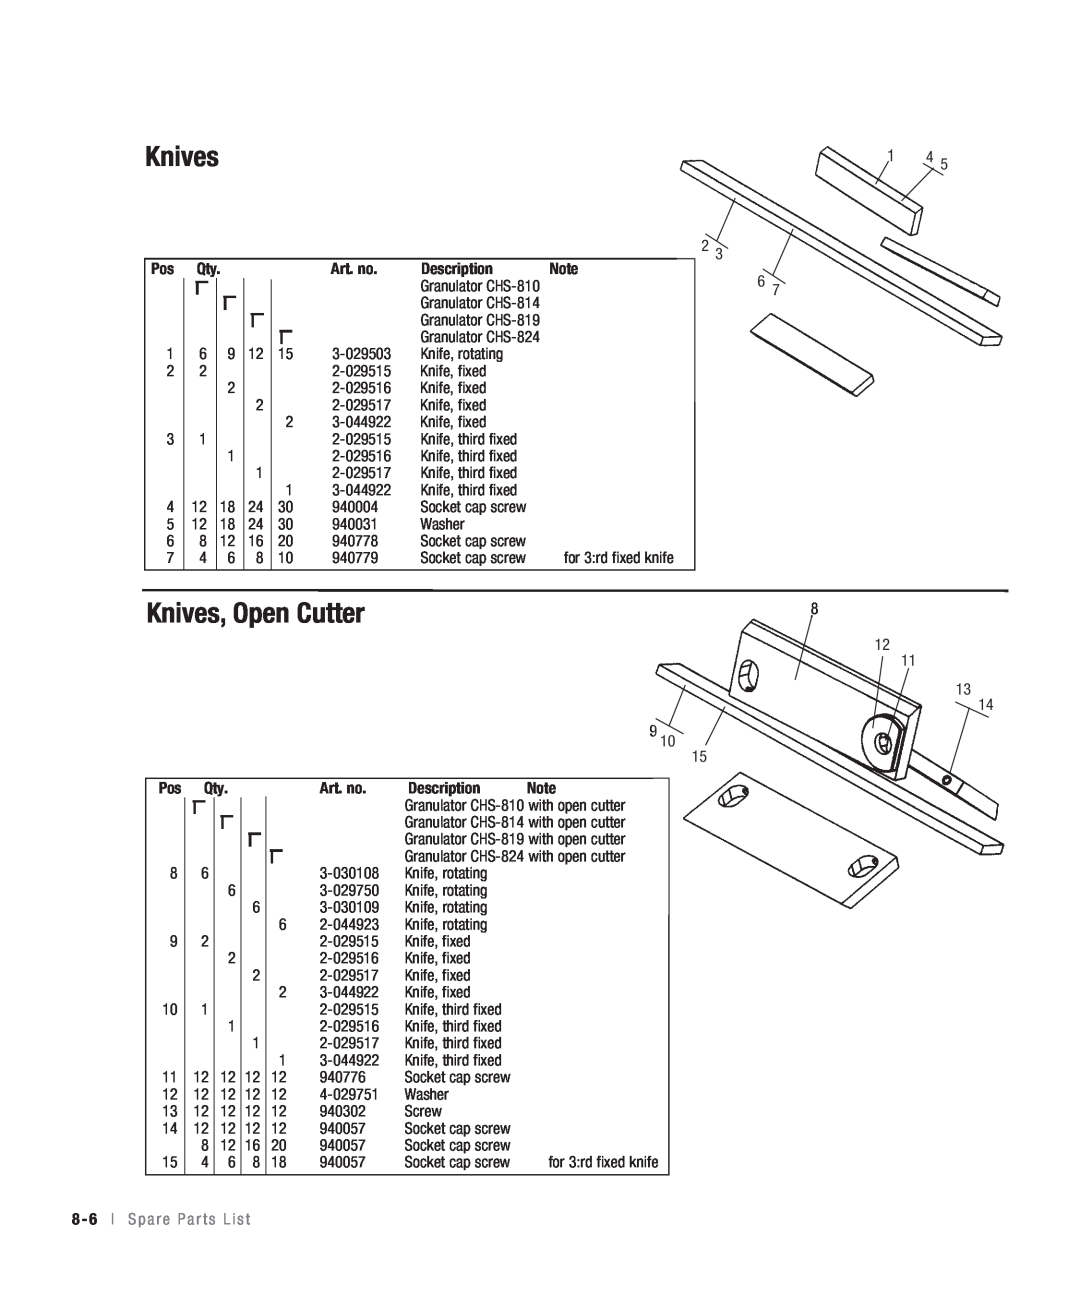 Conair CHS-810 manual Knives, Open Cutter, Art. no, Description, 8 - 6 l S p a r e P a r t s L i s t 